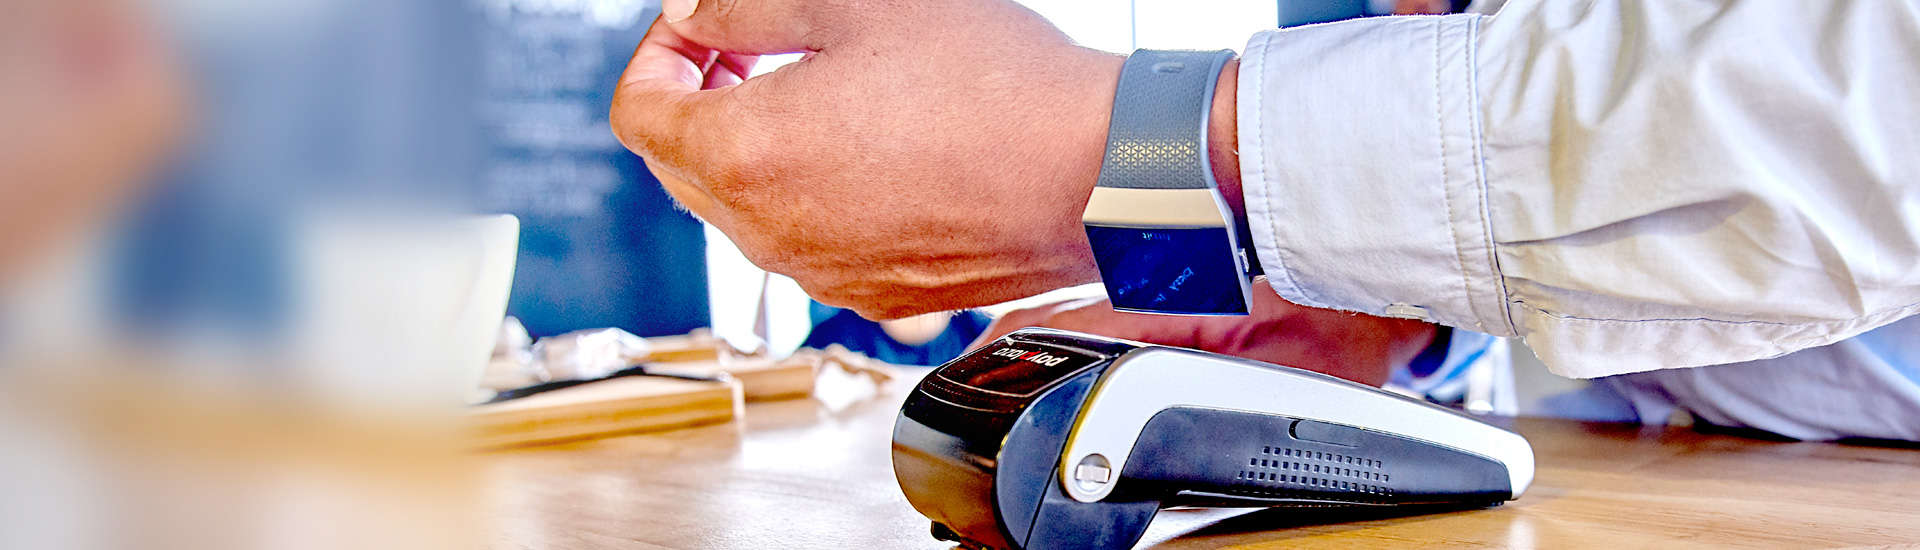 Uw digitale creditcard: betalen via smartwatch